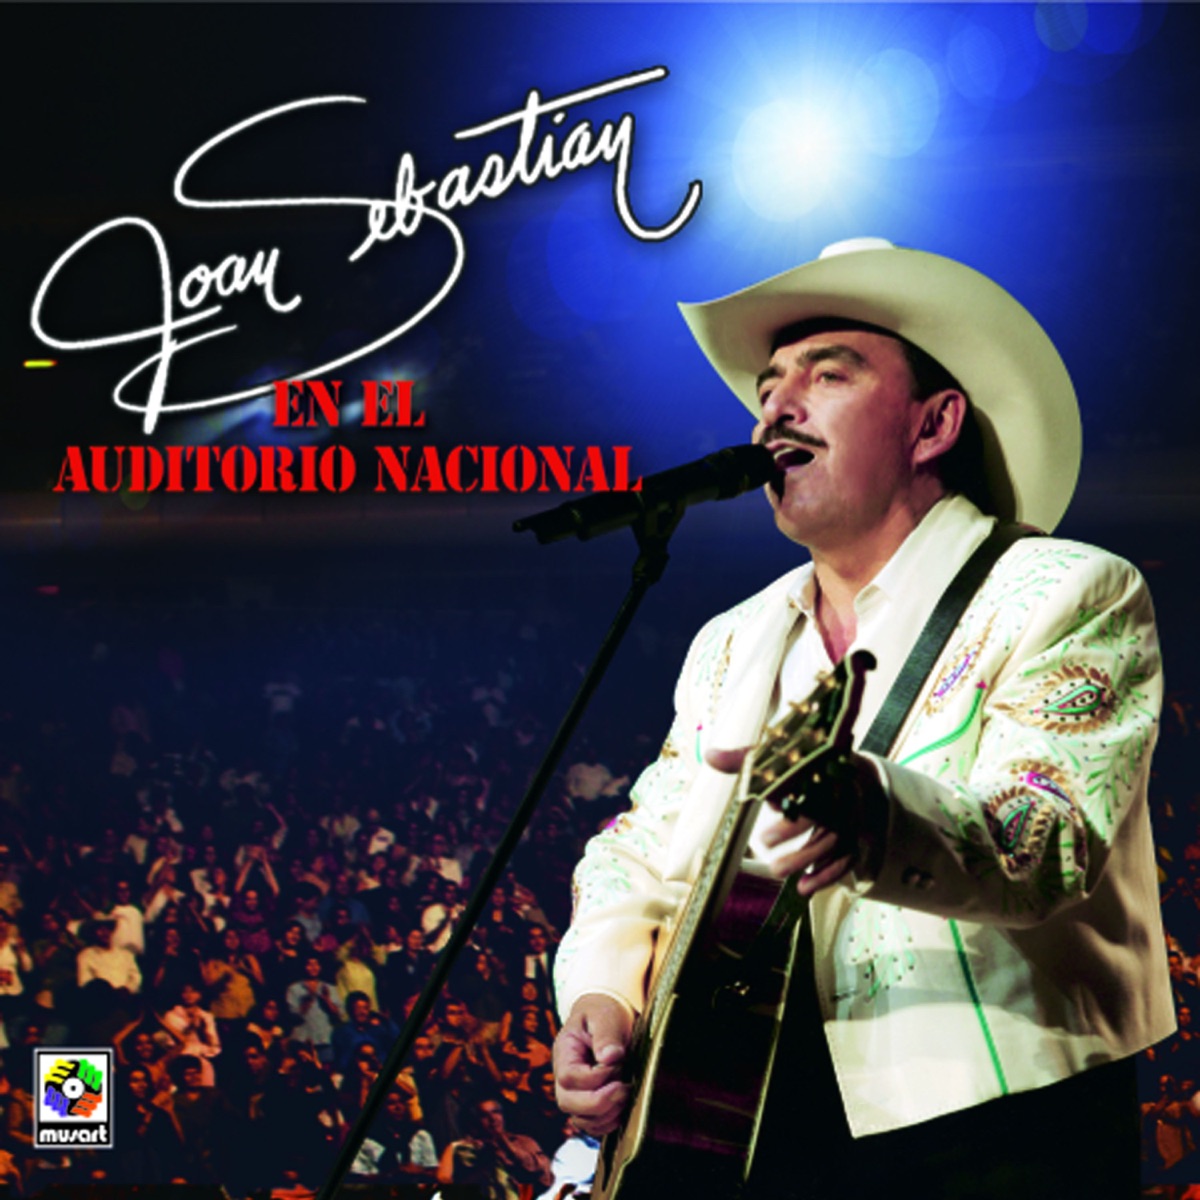 En El Auditorio Nacional (En Vivo)” álbum de Joan Sebastian en Apple Music